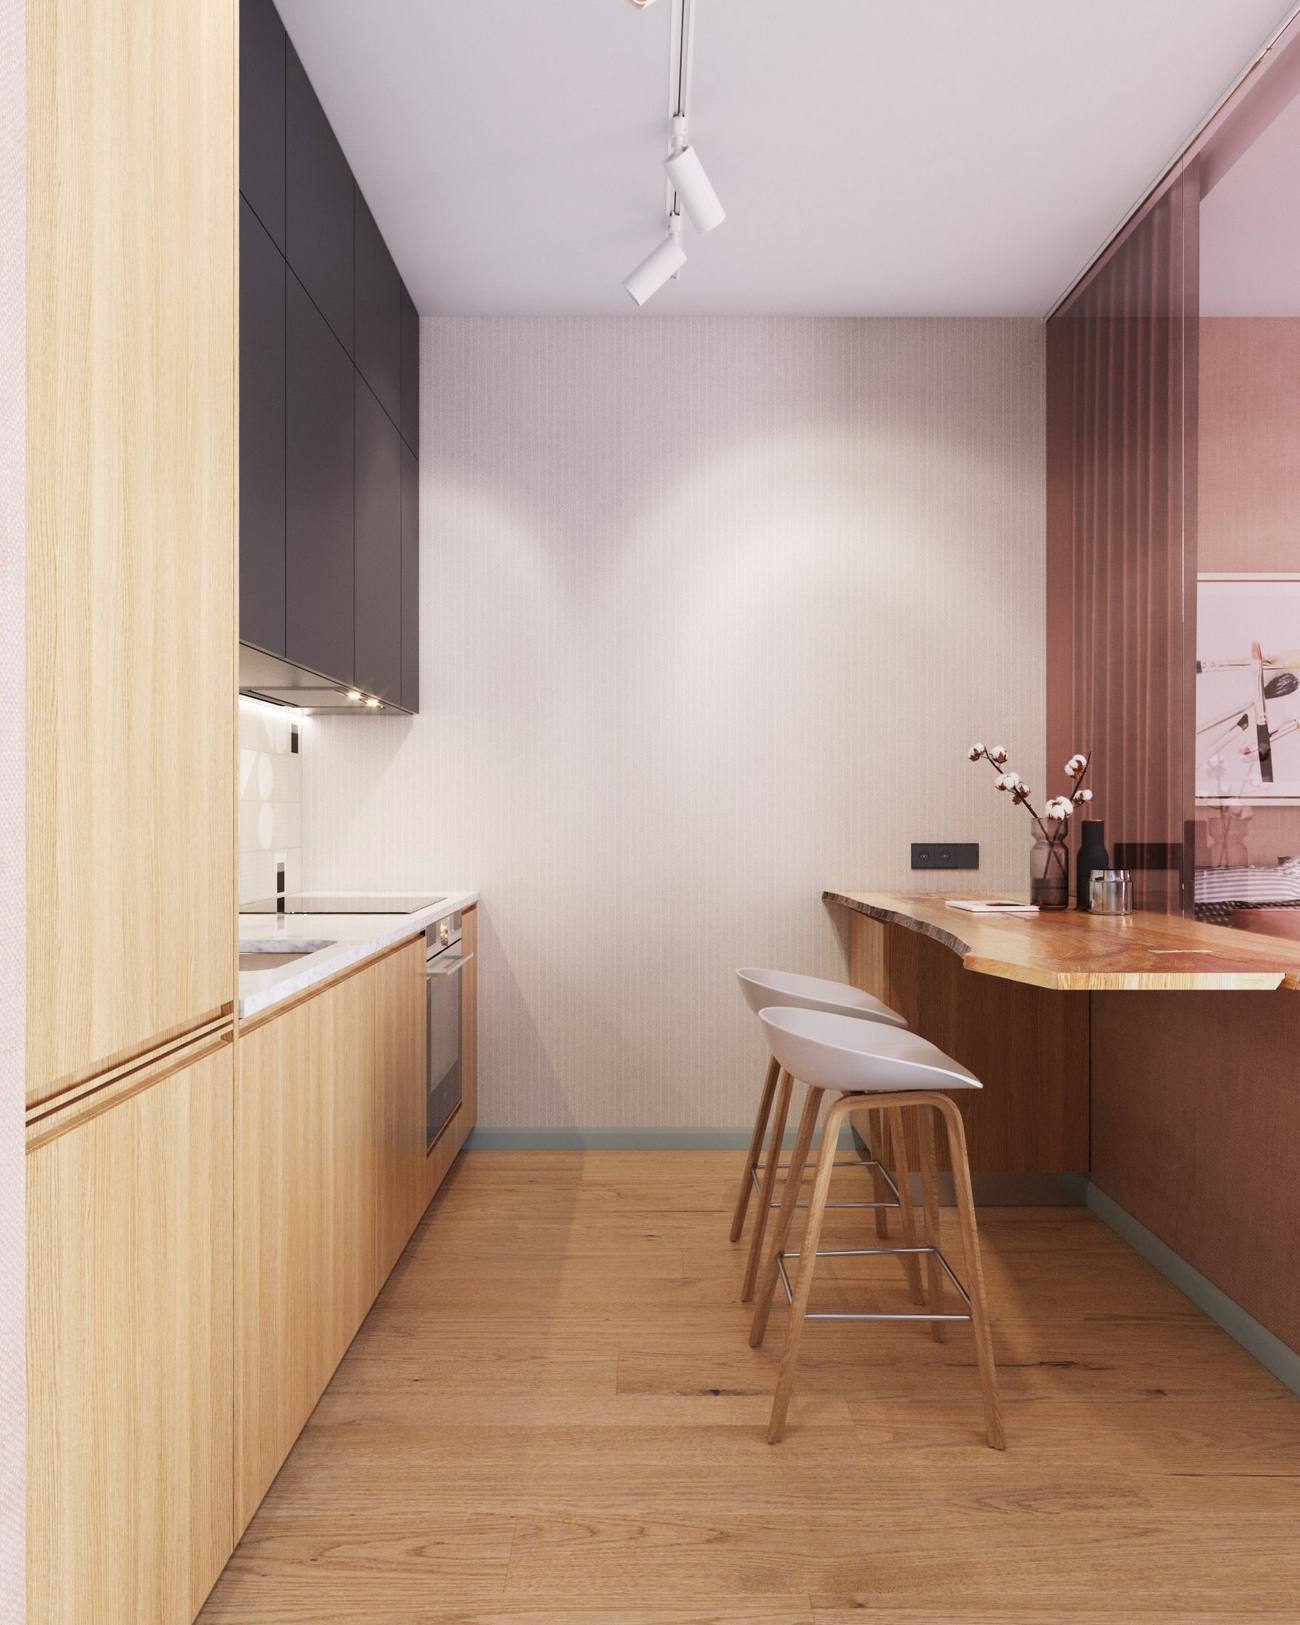 Đối diện bếp là quầy bar ăn sáng thiết kế gắn tường, phân vùng với phòng khách - phòng ngủ bằng cửa kính tone màu hồng phấn điệu đà. Lựa chọn này giúp cho khu vực nấu nướng đón nhận được nguồn sáng tự nhiên duy nhất từ ô cửa chính, bên cạnh hệ thống đèn trần phía trên.